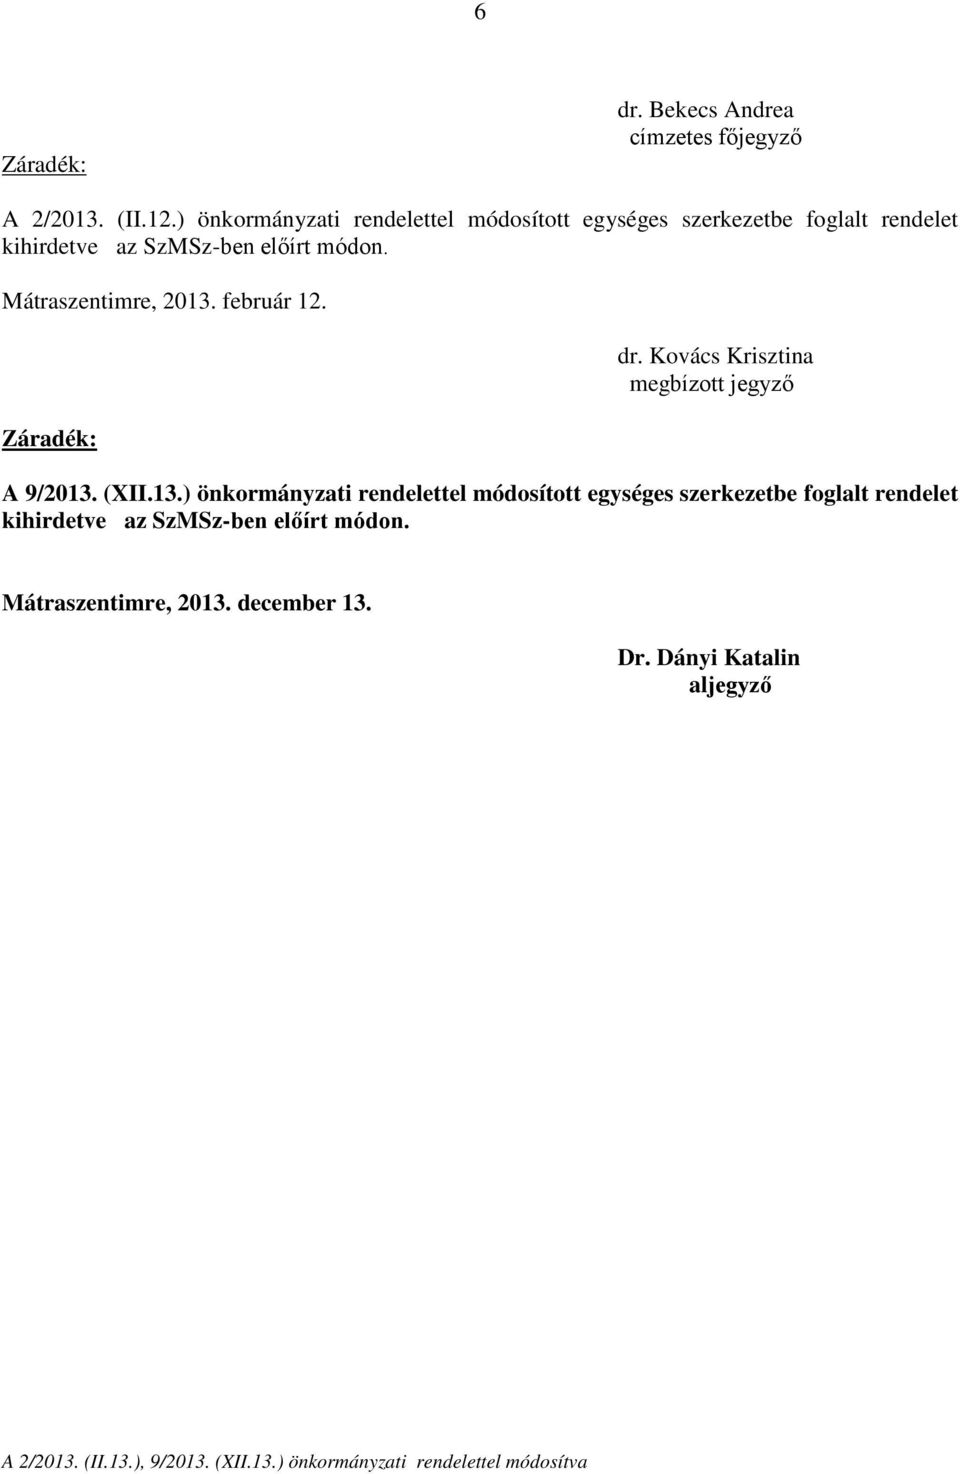 Mátraszentimre, 2013. február 12. dr. Kovács Krisztina megbízott A 9/2013. (XII.